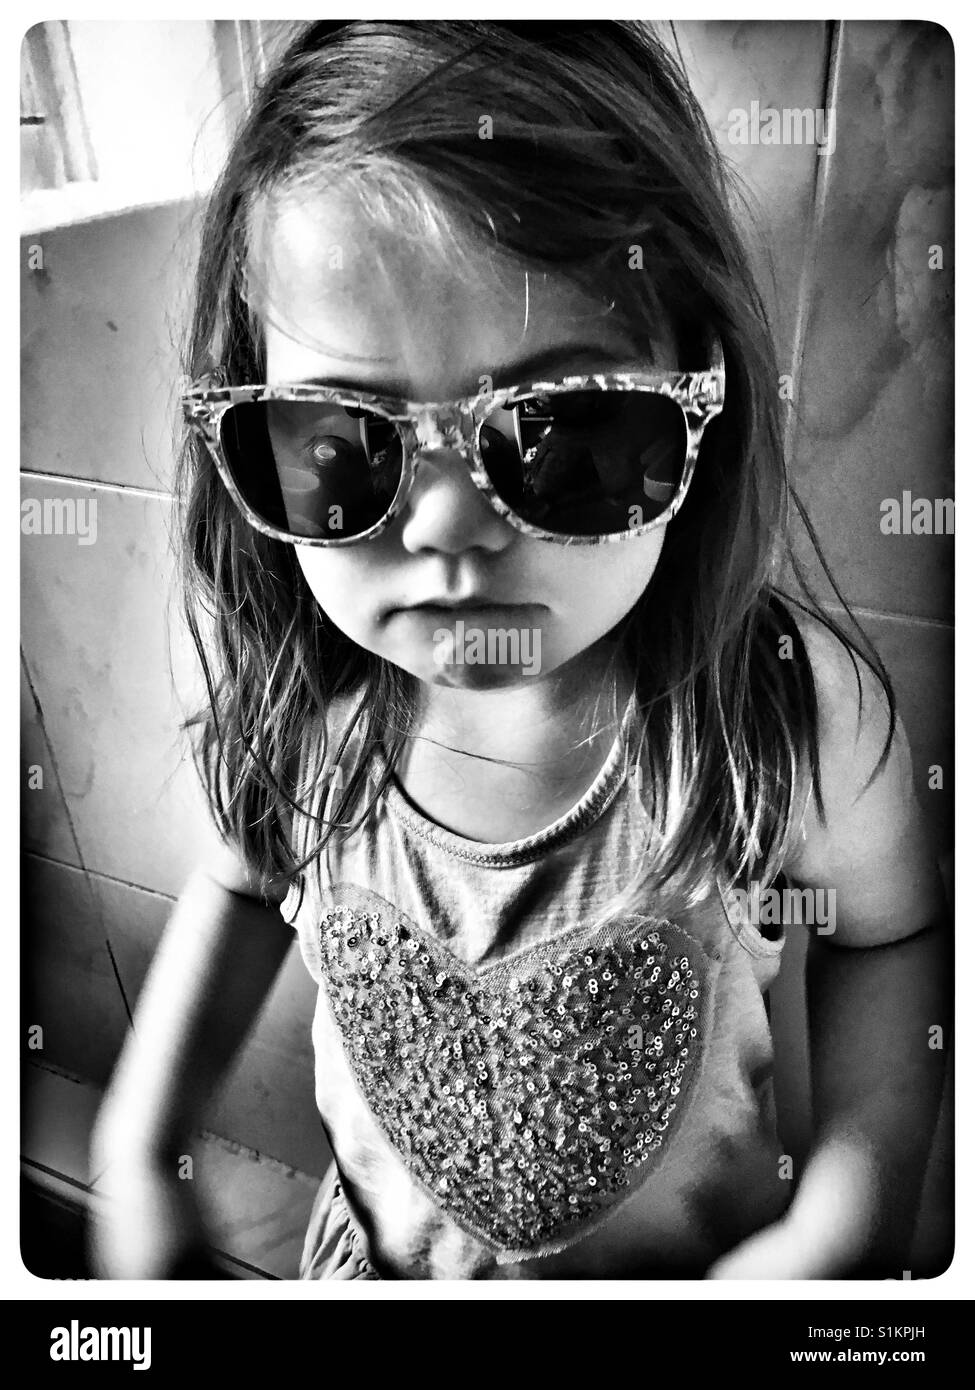 Chicas gafas de sol Imágenes de stock en blanco y negro - Alamy